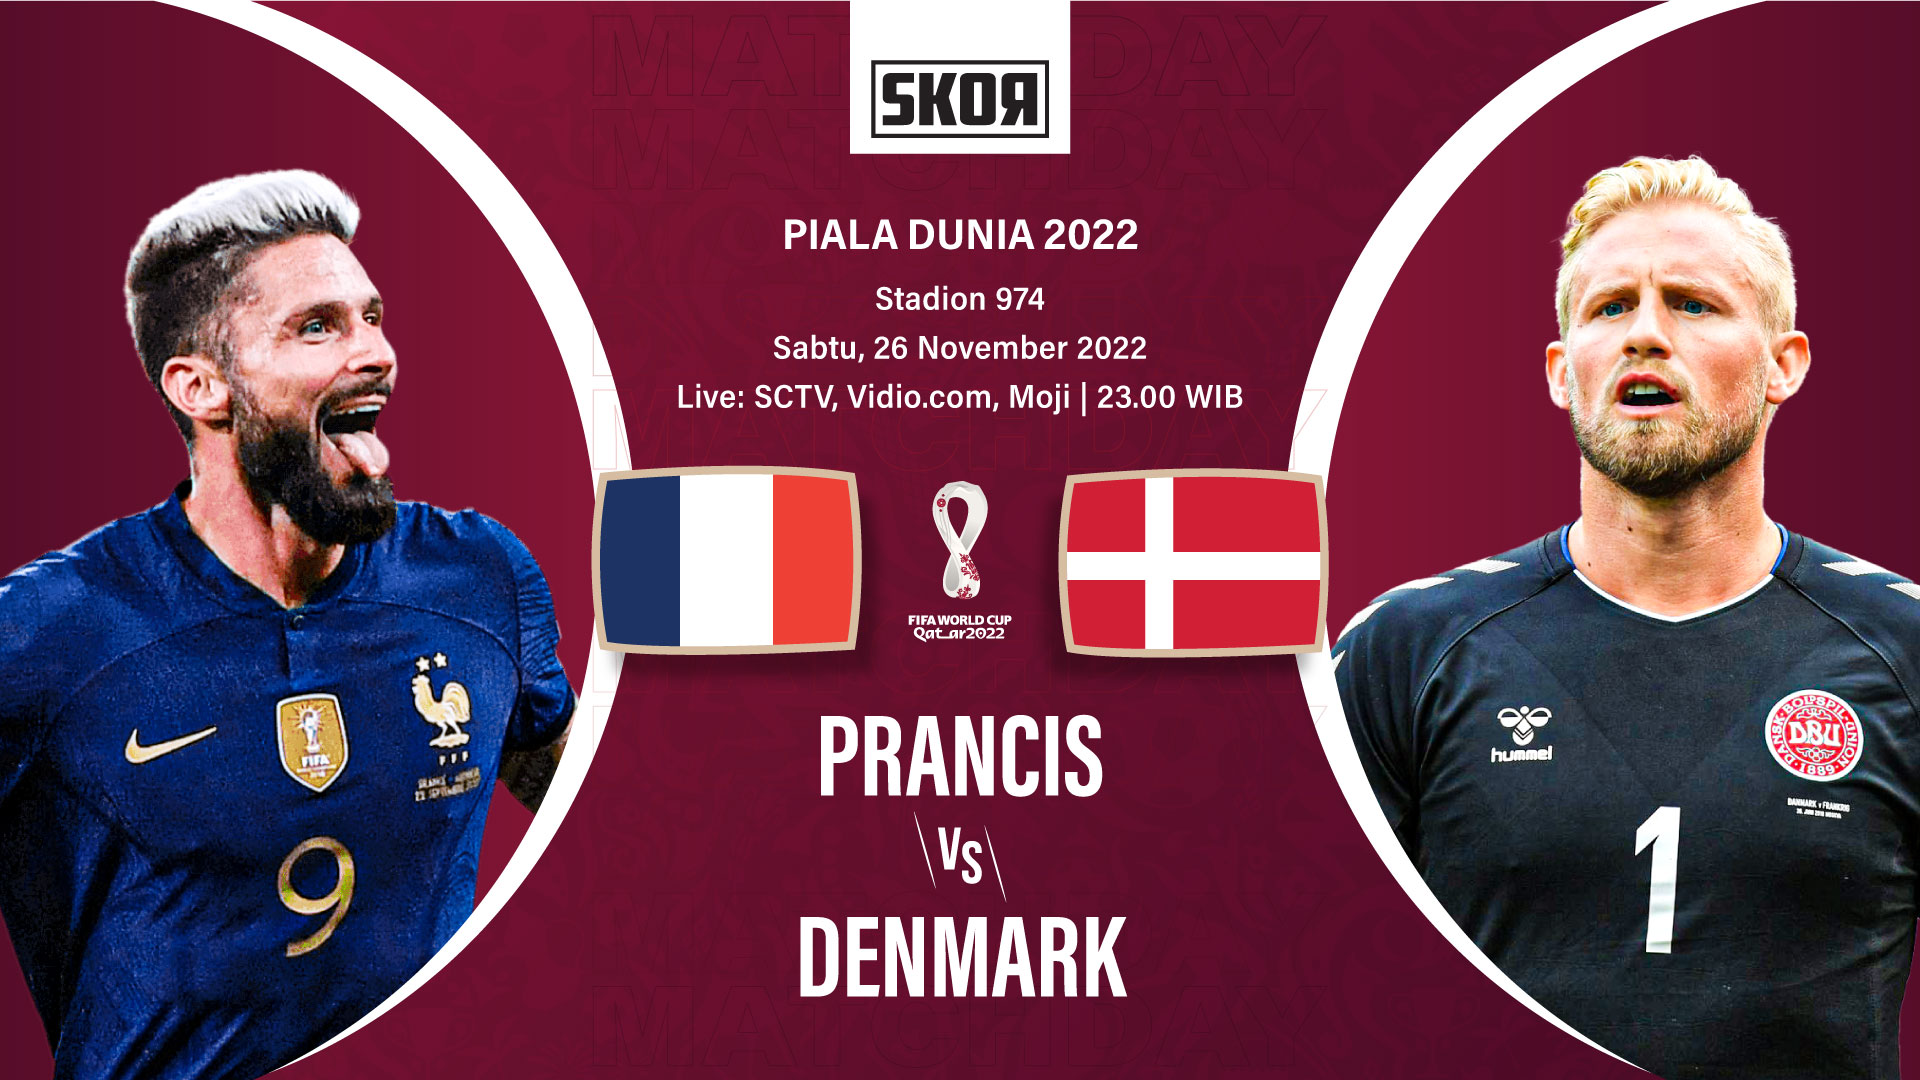 Preview dan Link Live Streaming Prancis vs Denmark di Piala Dunia 2022